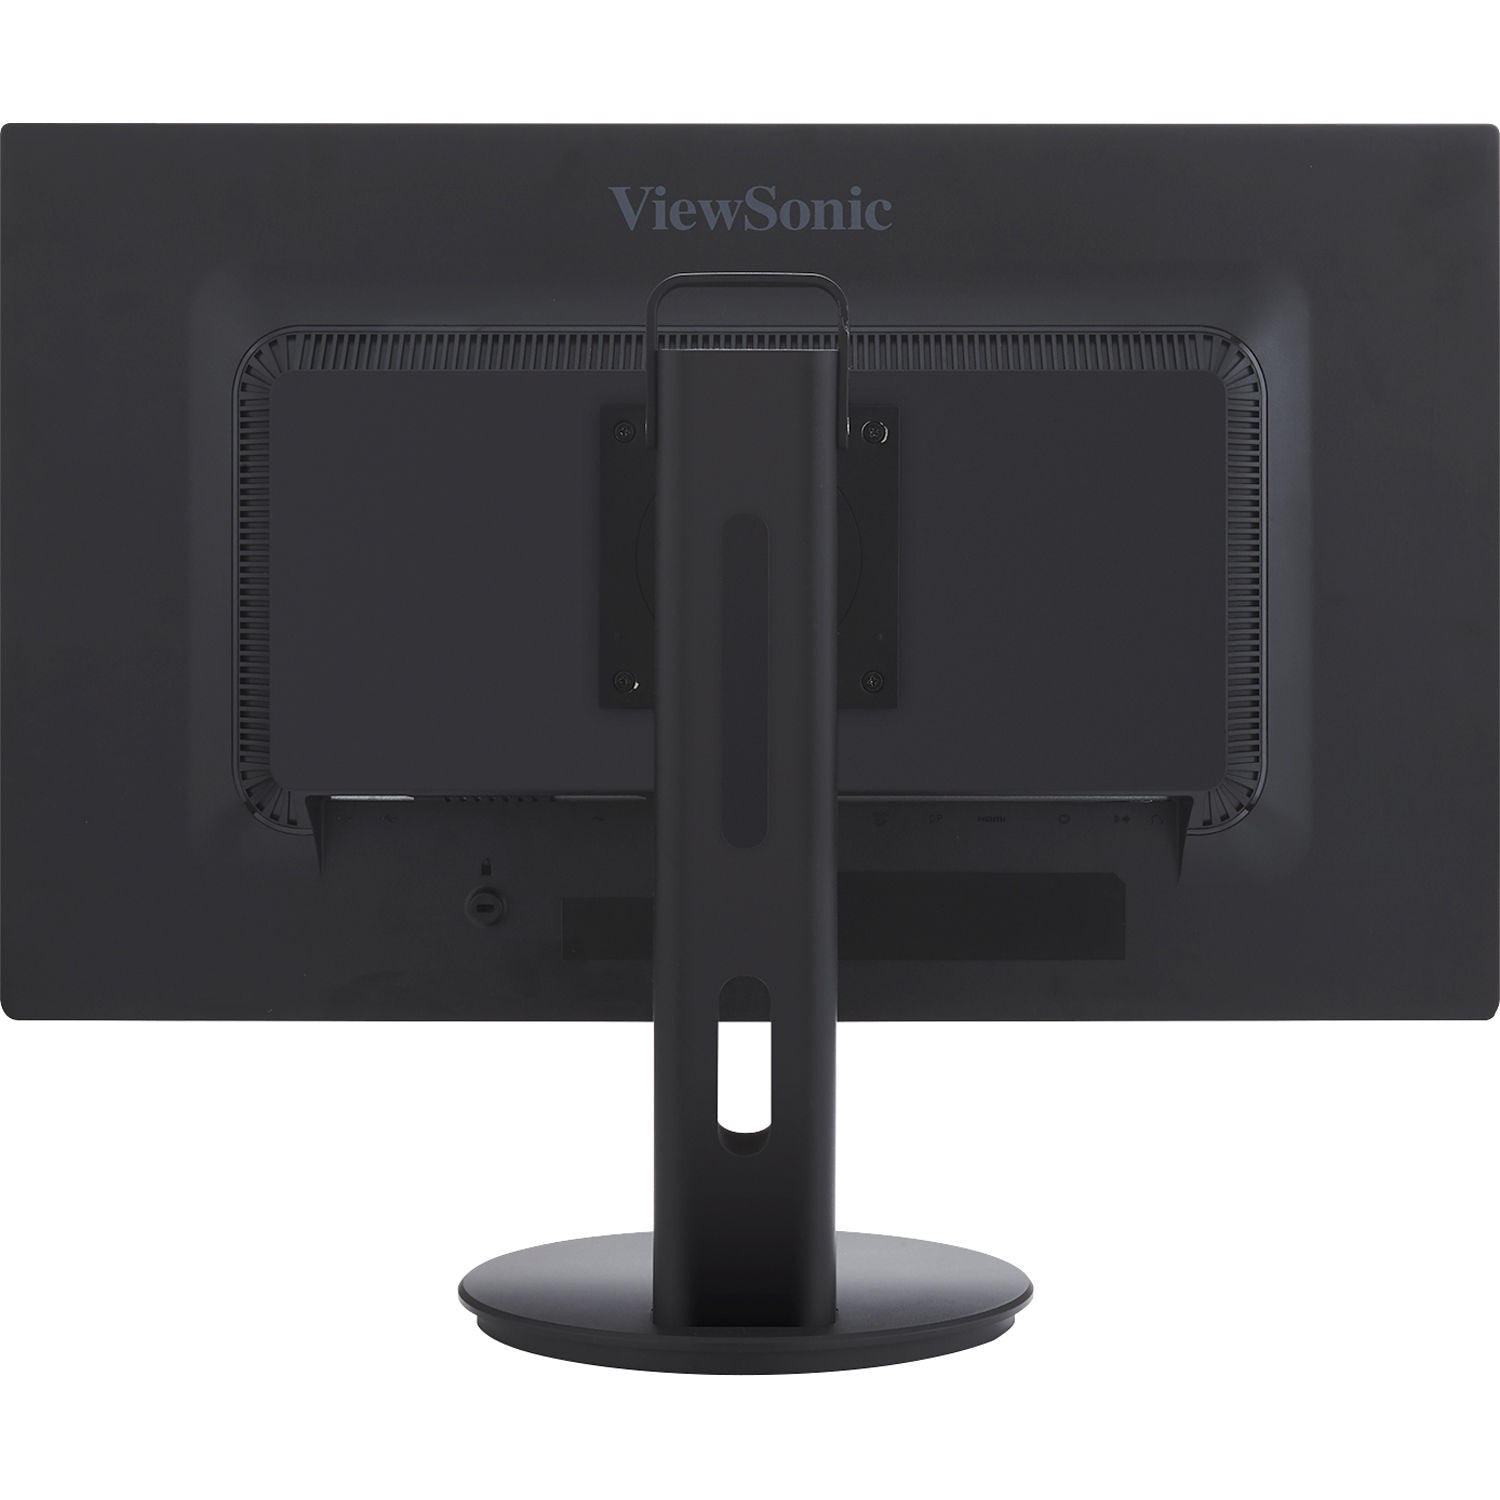 ViewSonic VG2753-S 27" IPS 1080p Ergonomic Monitor - Certified Refurbished